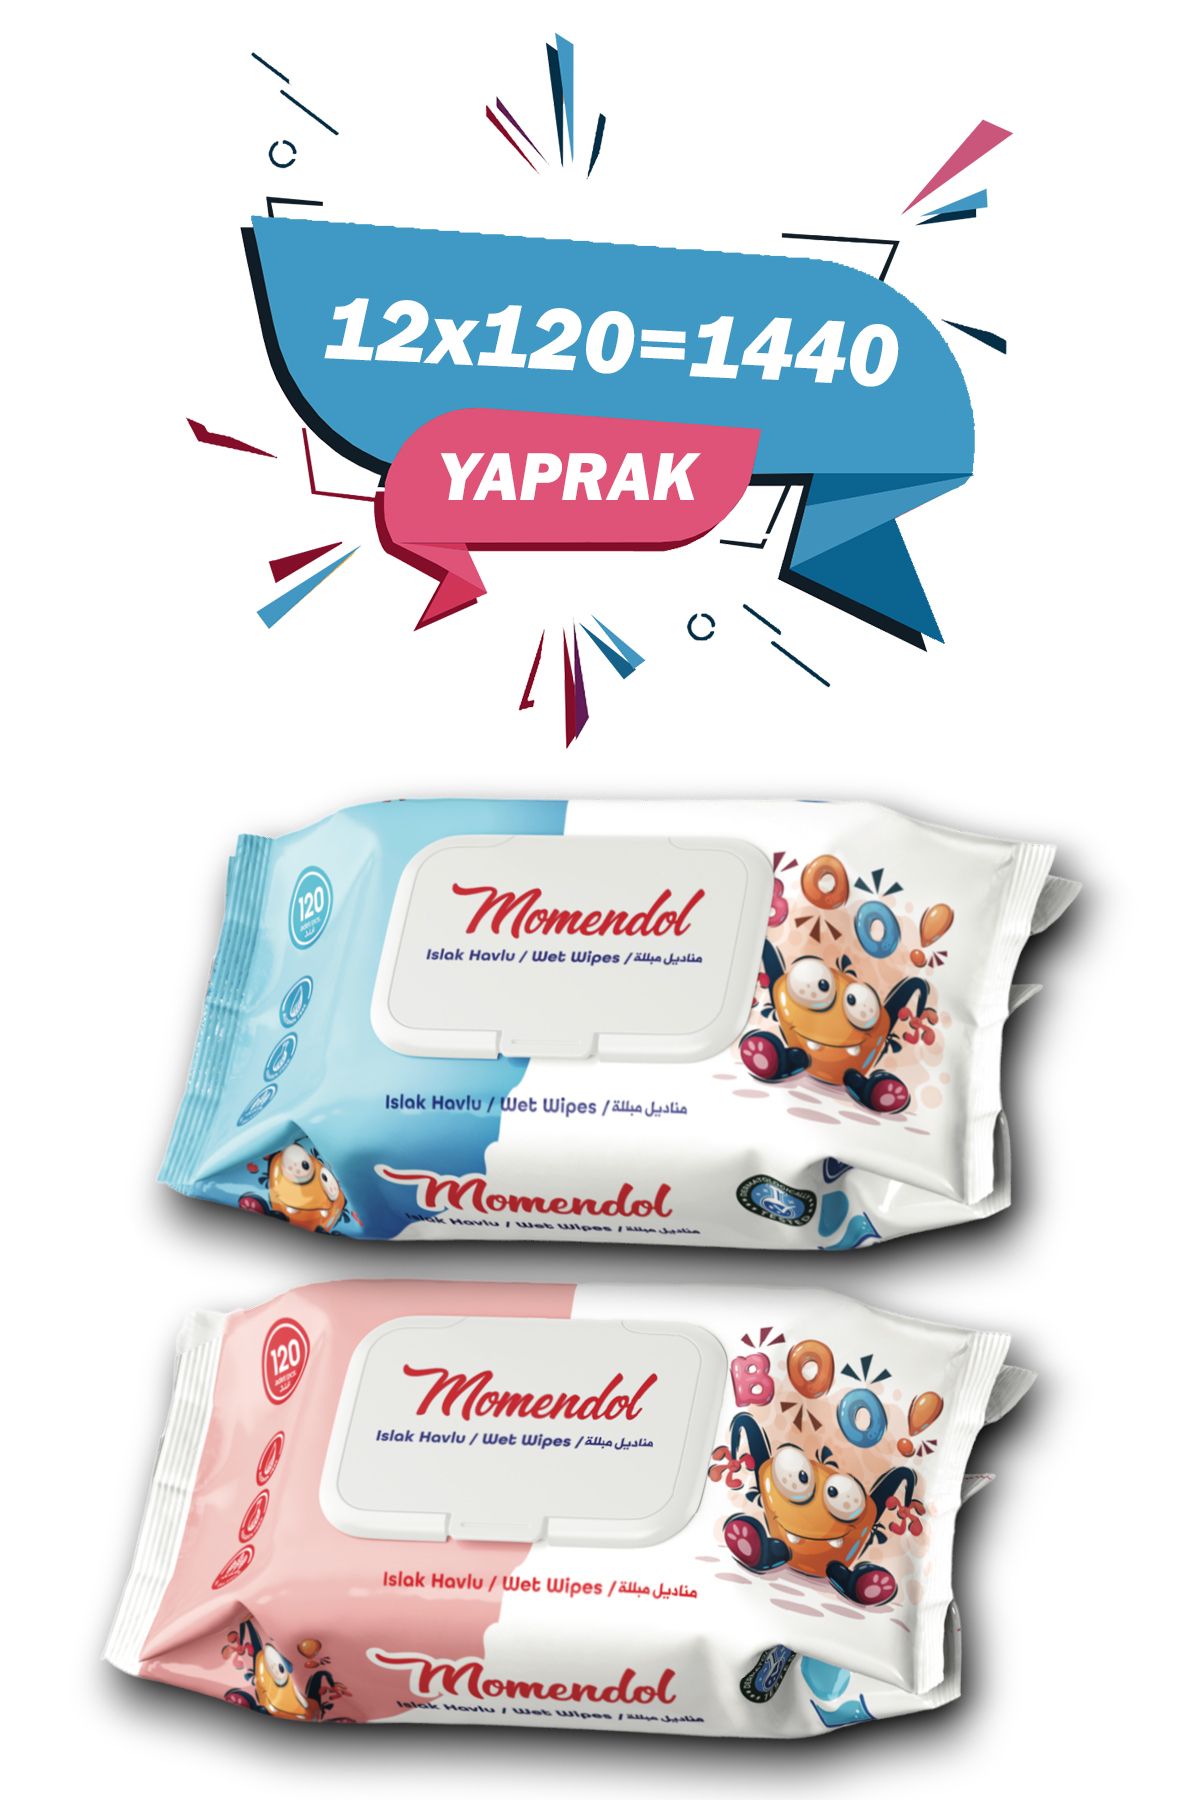 SHAYS Momendol Mix Islak Havlu 120'Li 12 Paket - 1440 Yaprak